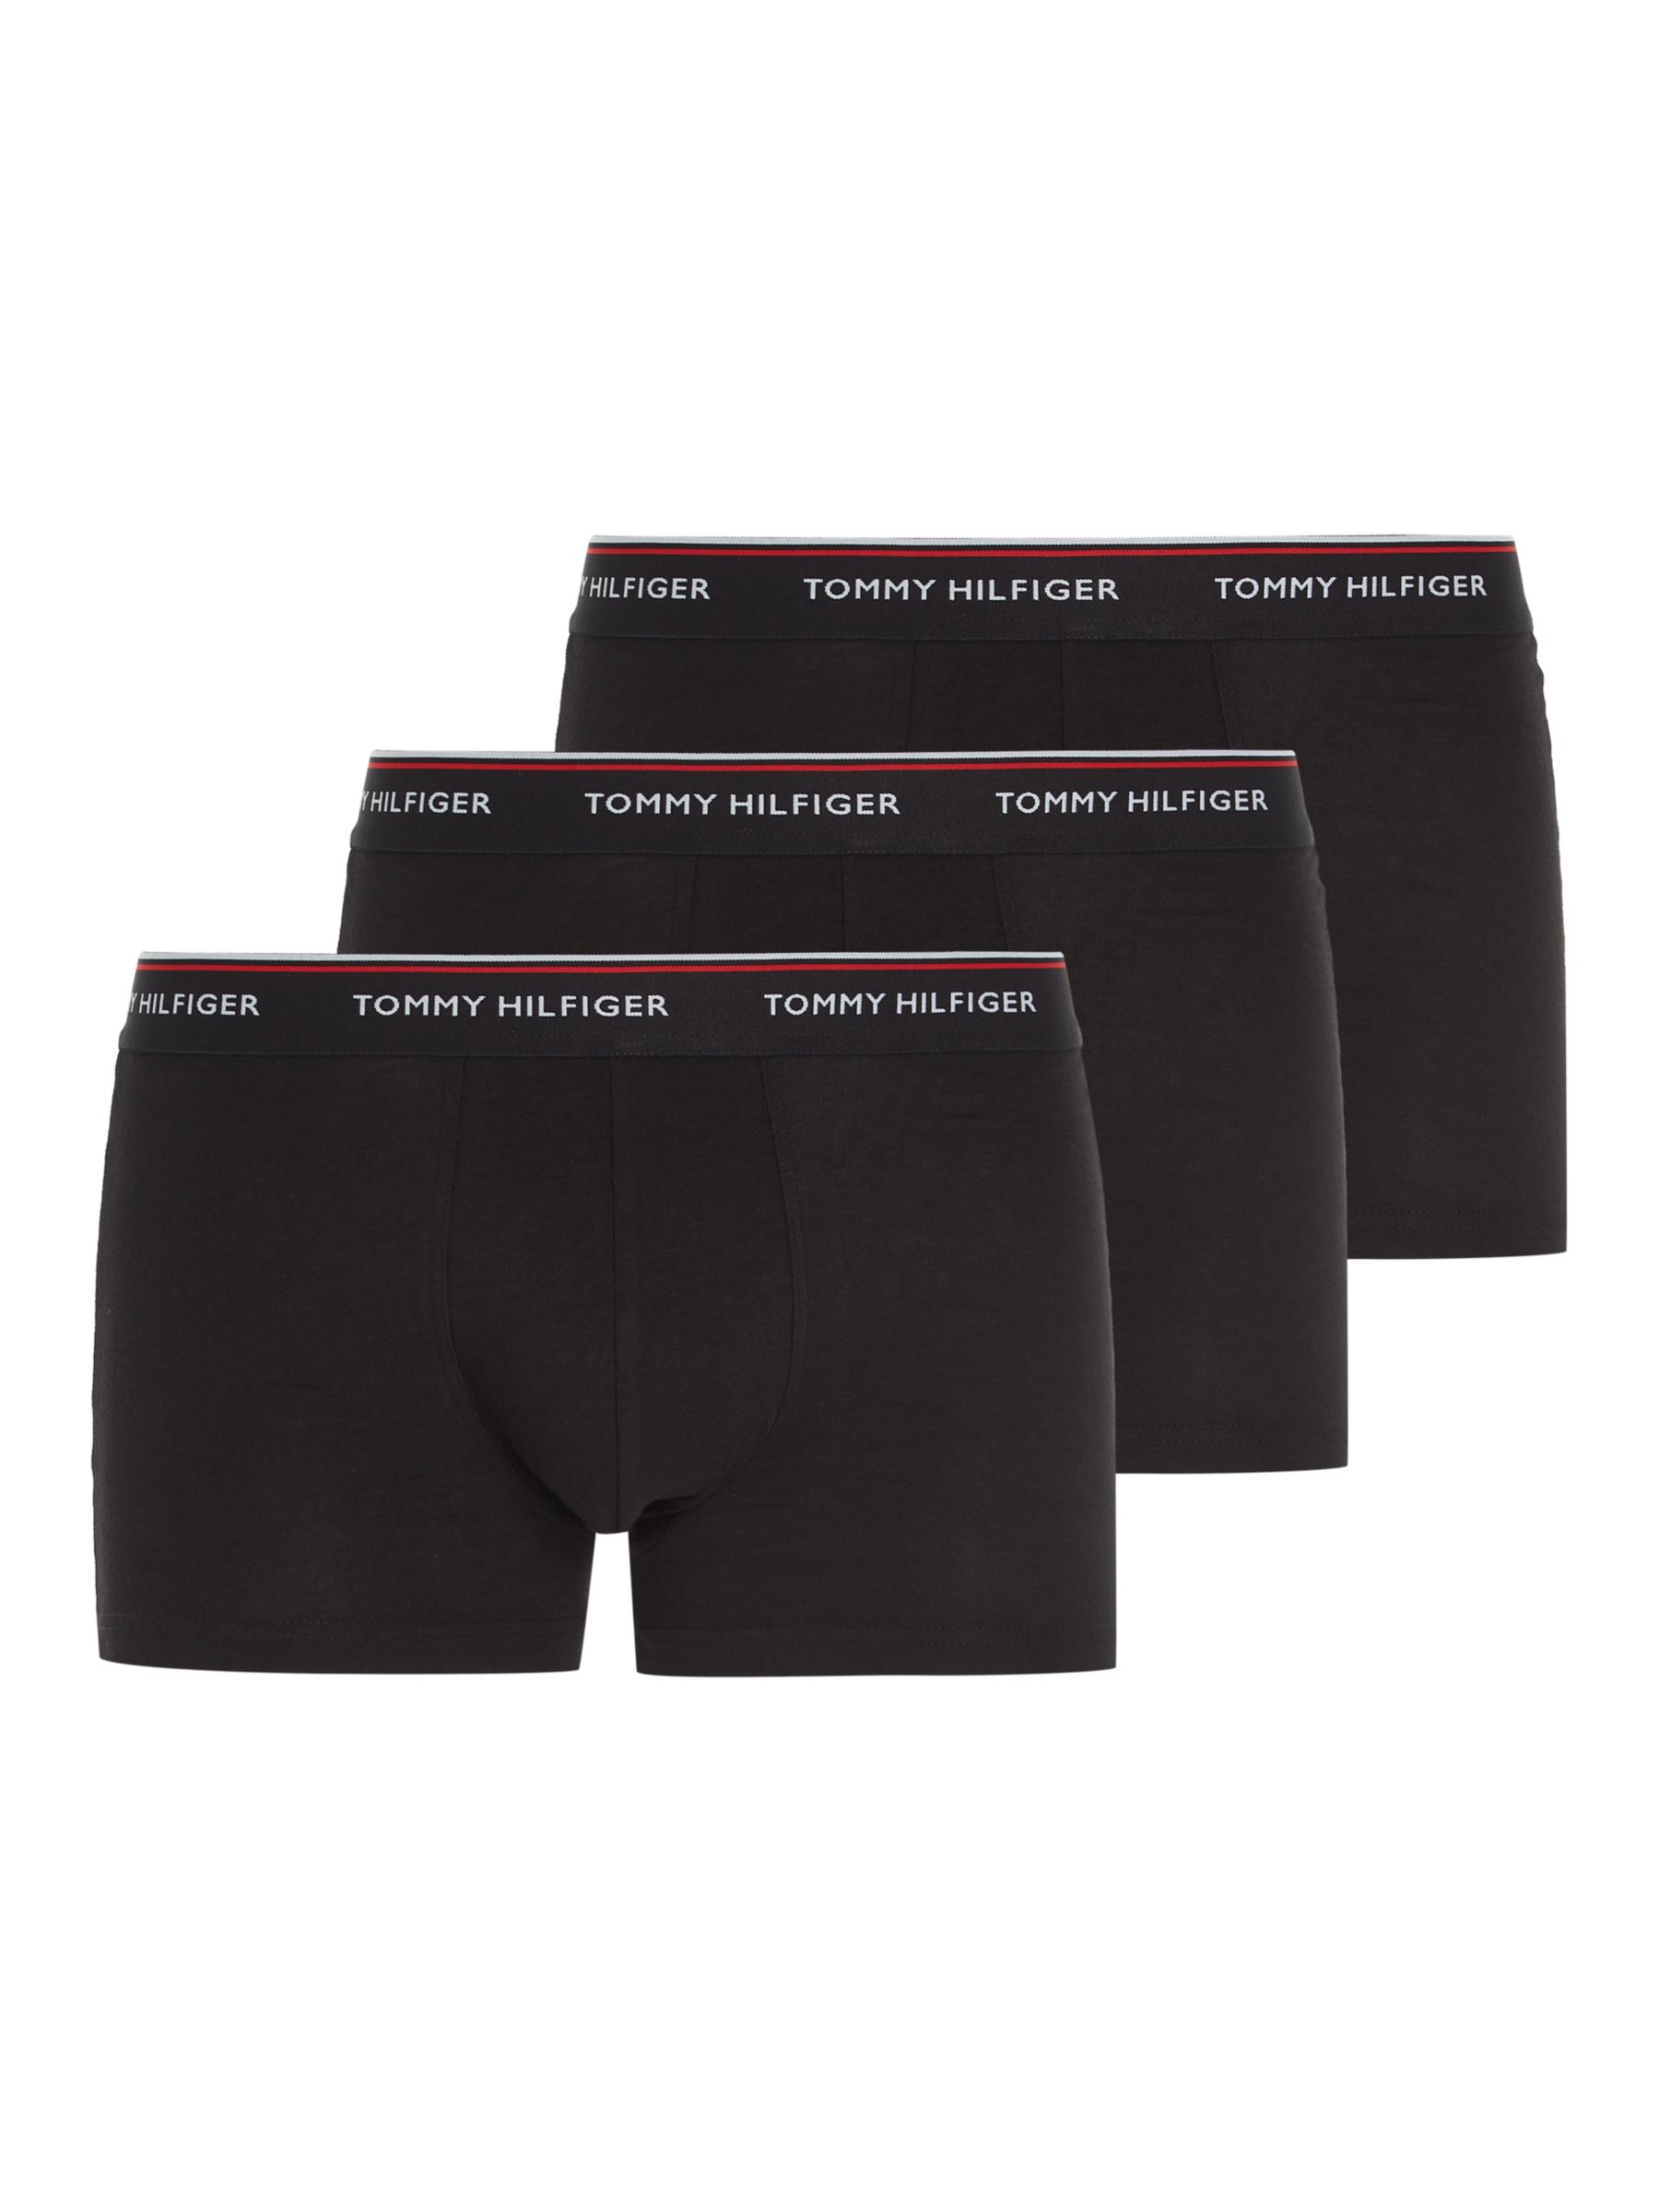 Women's underwear - Tommy Hilfiger, Up to 60 % off